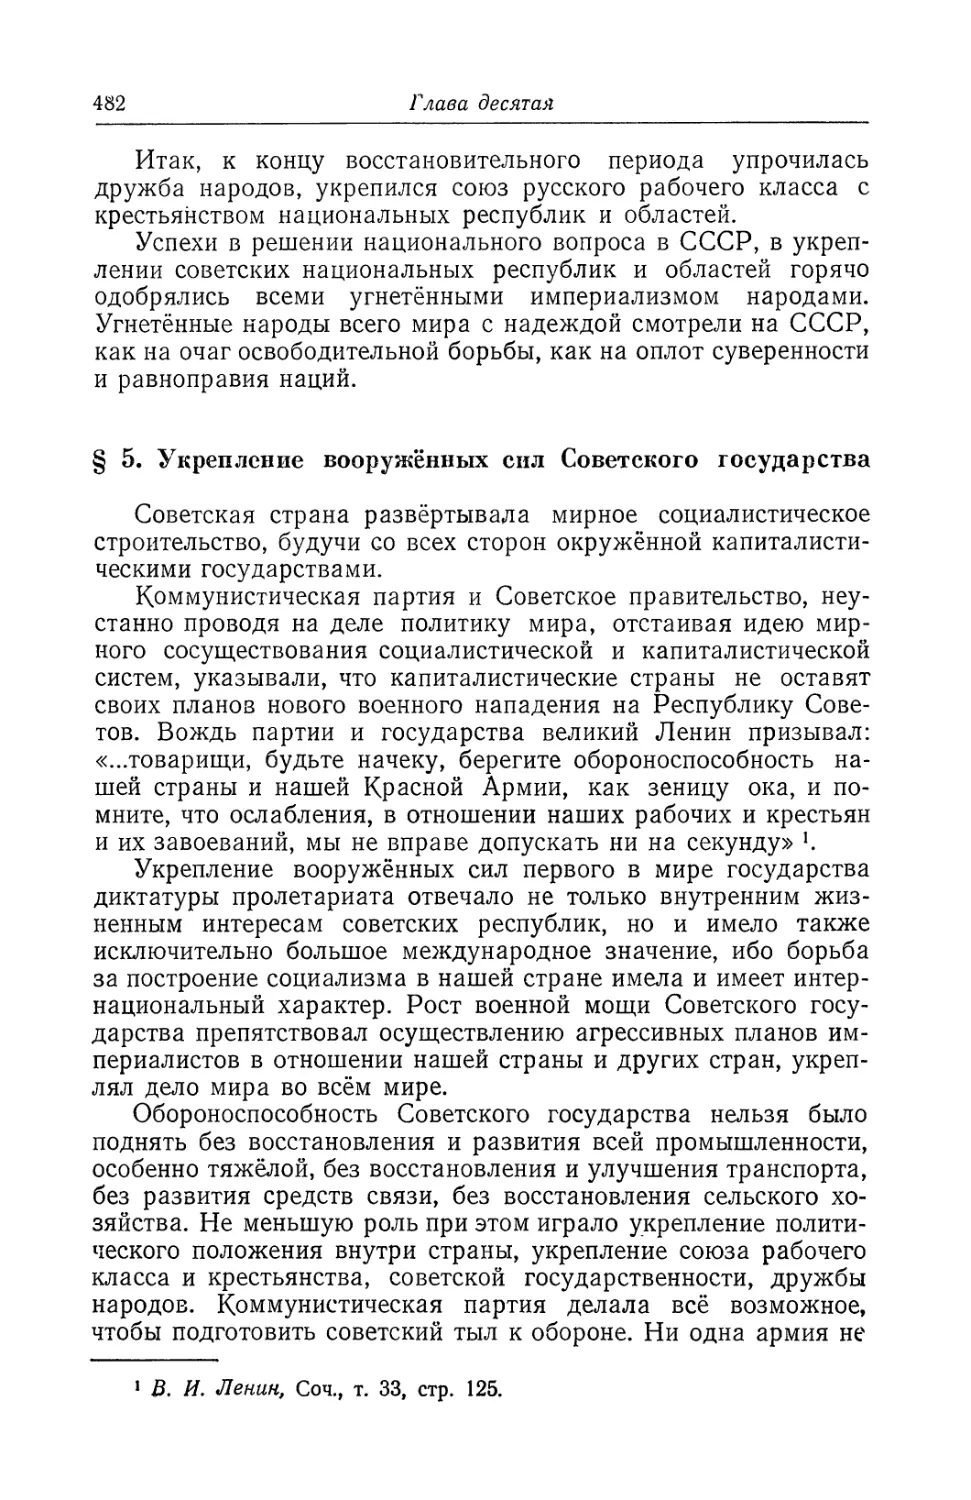 § 5. Укрепление вооружённых сил Советского государства